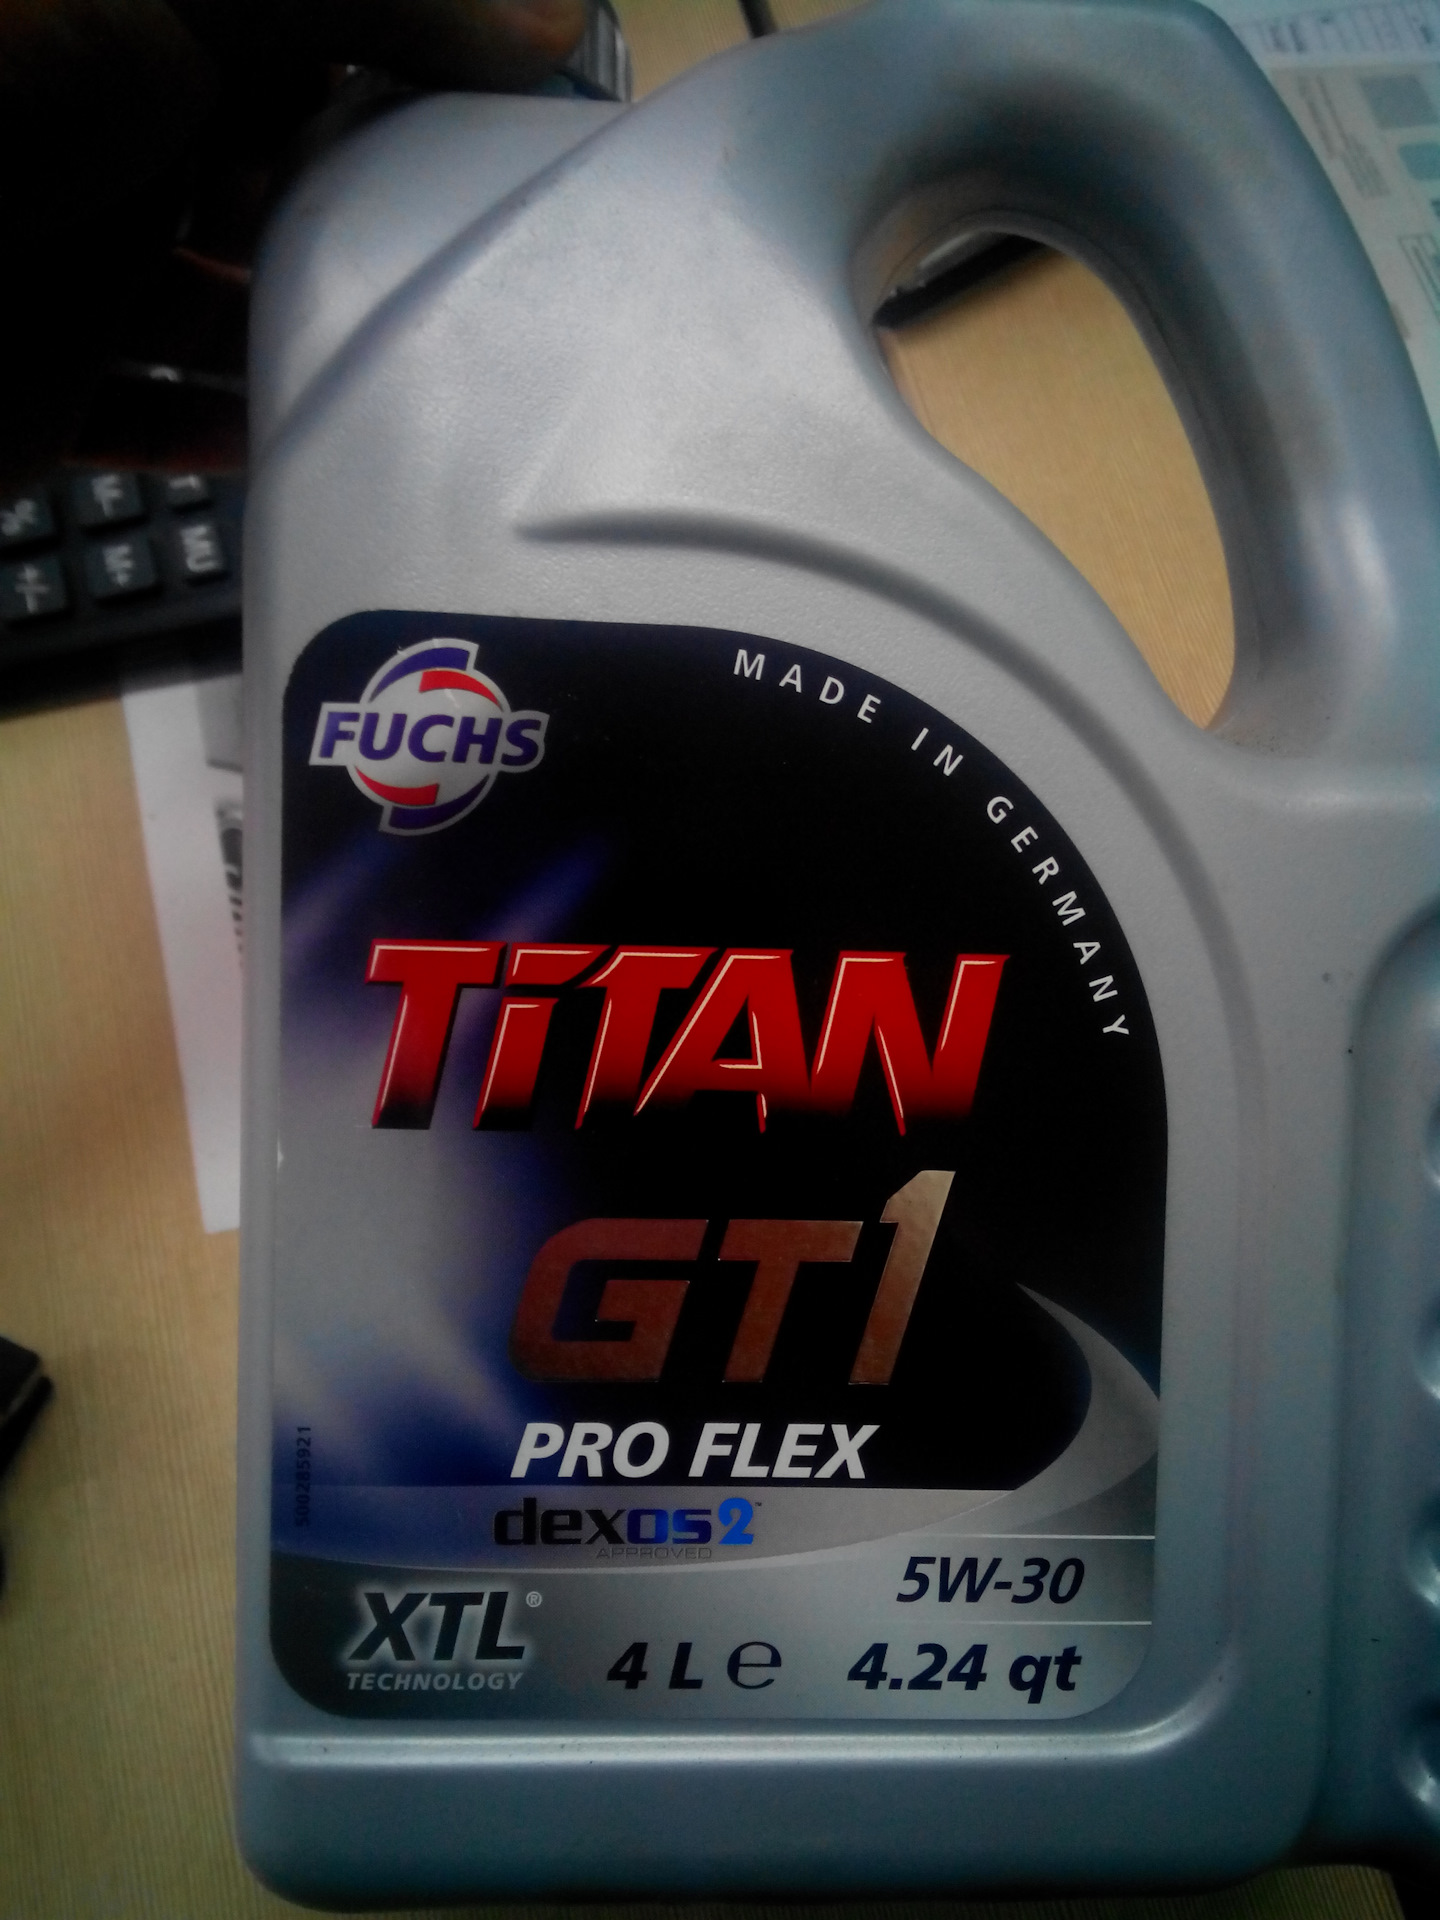 Купить масло титан 5w30. Моторное масло Титан 5w30. Fuchs Titan 5w30. Масло Титан 5w30 XTL. Масло Титан 5w30 Германия.